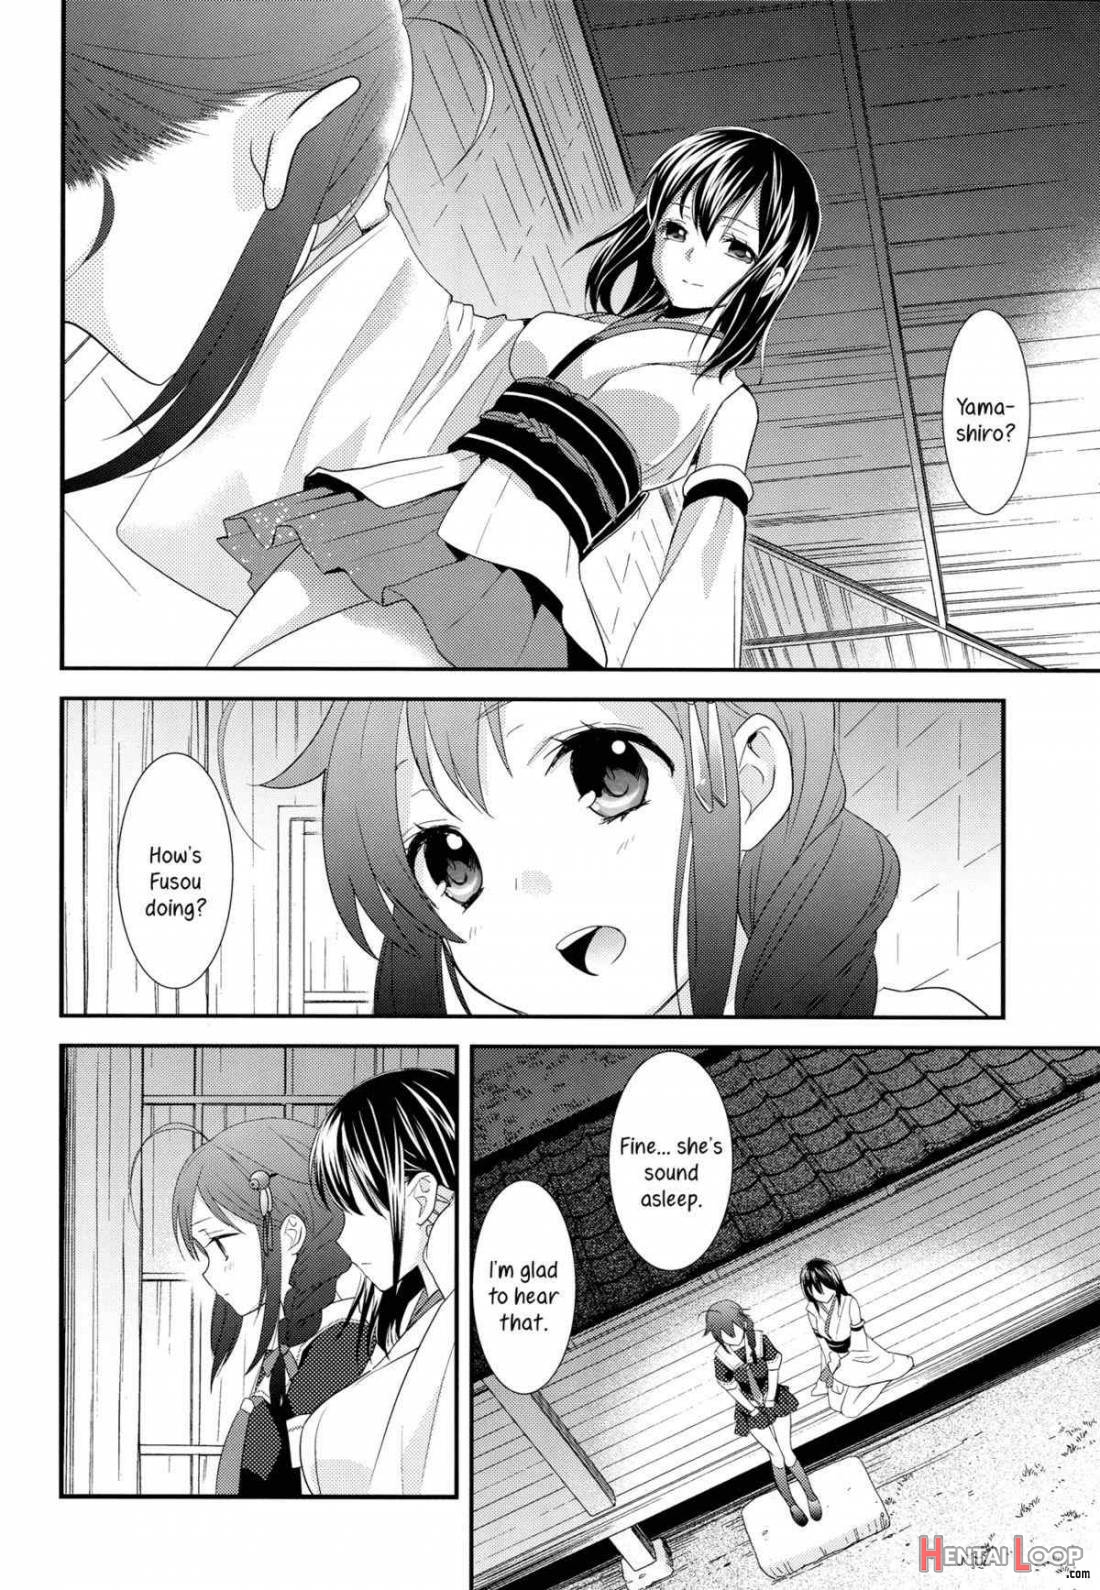 Yama Shigure page 8